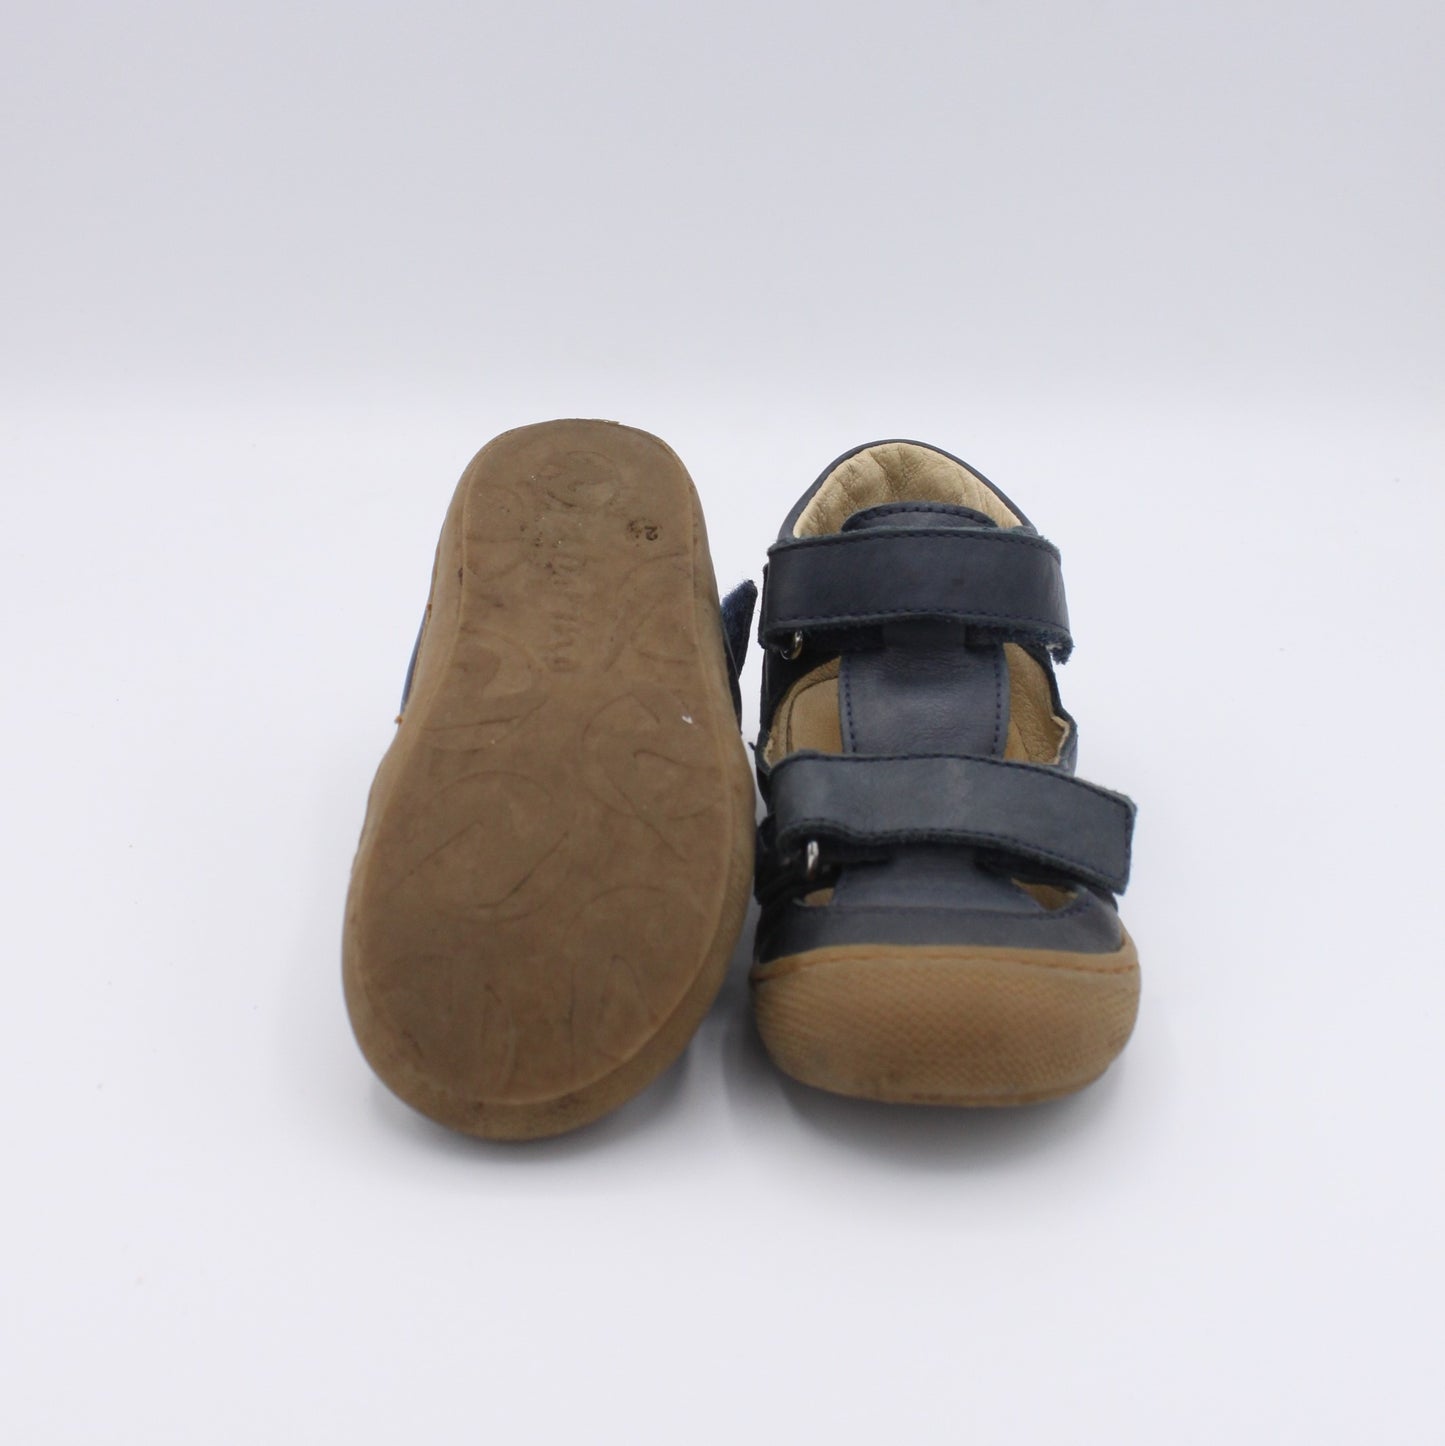 Pre-loved Sandals (EU24)